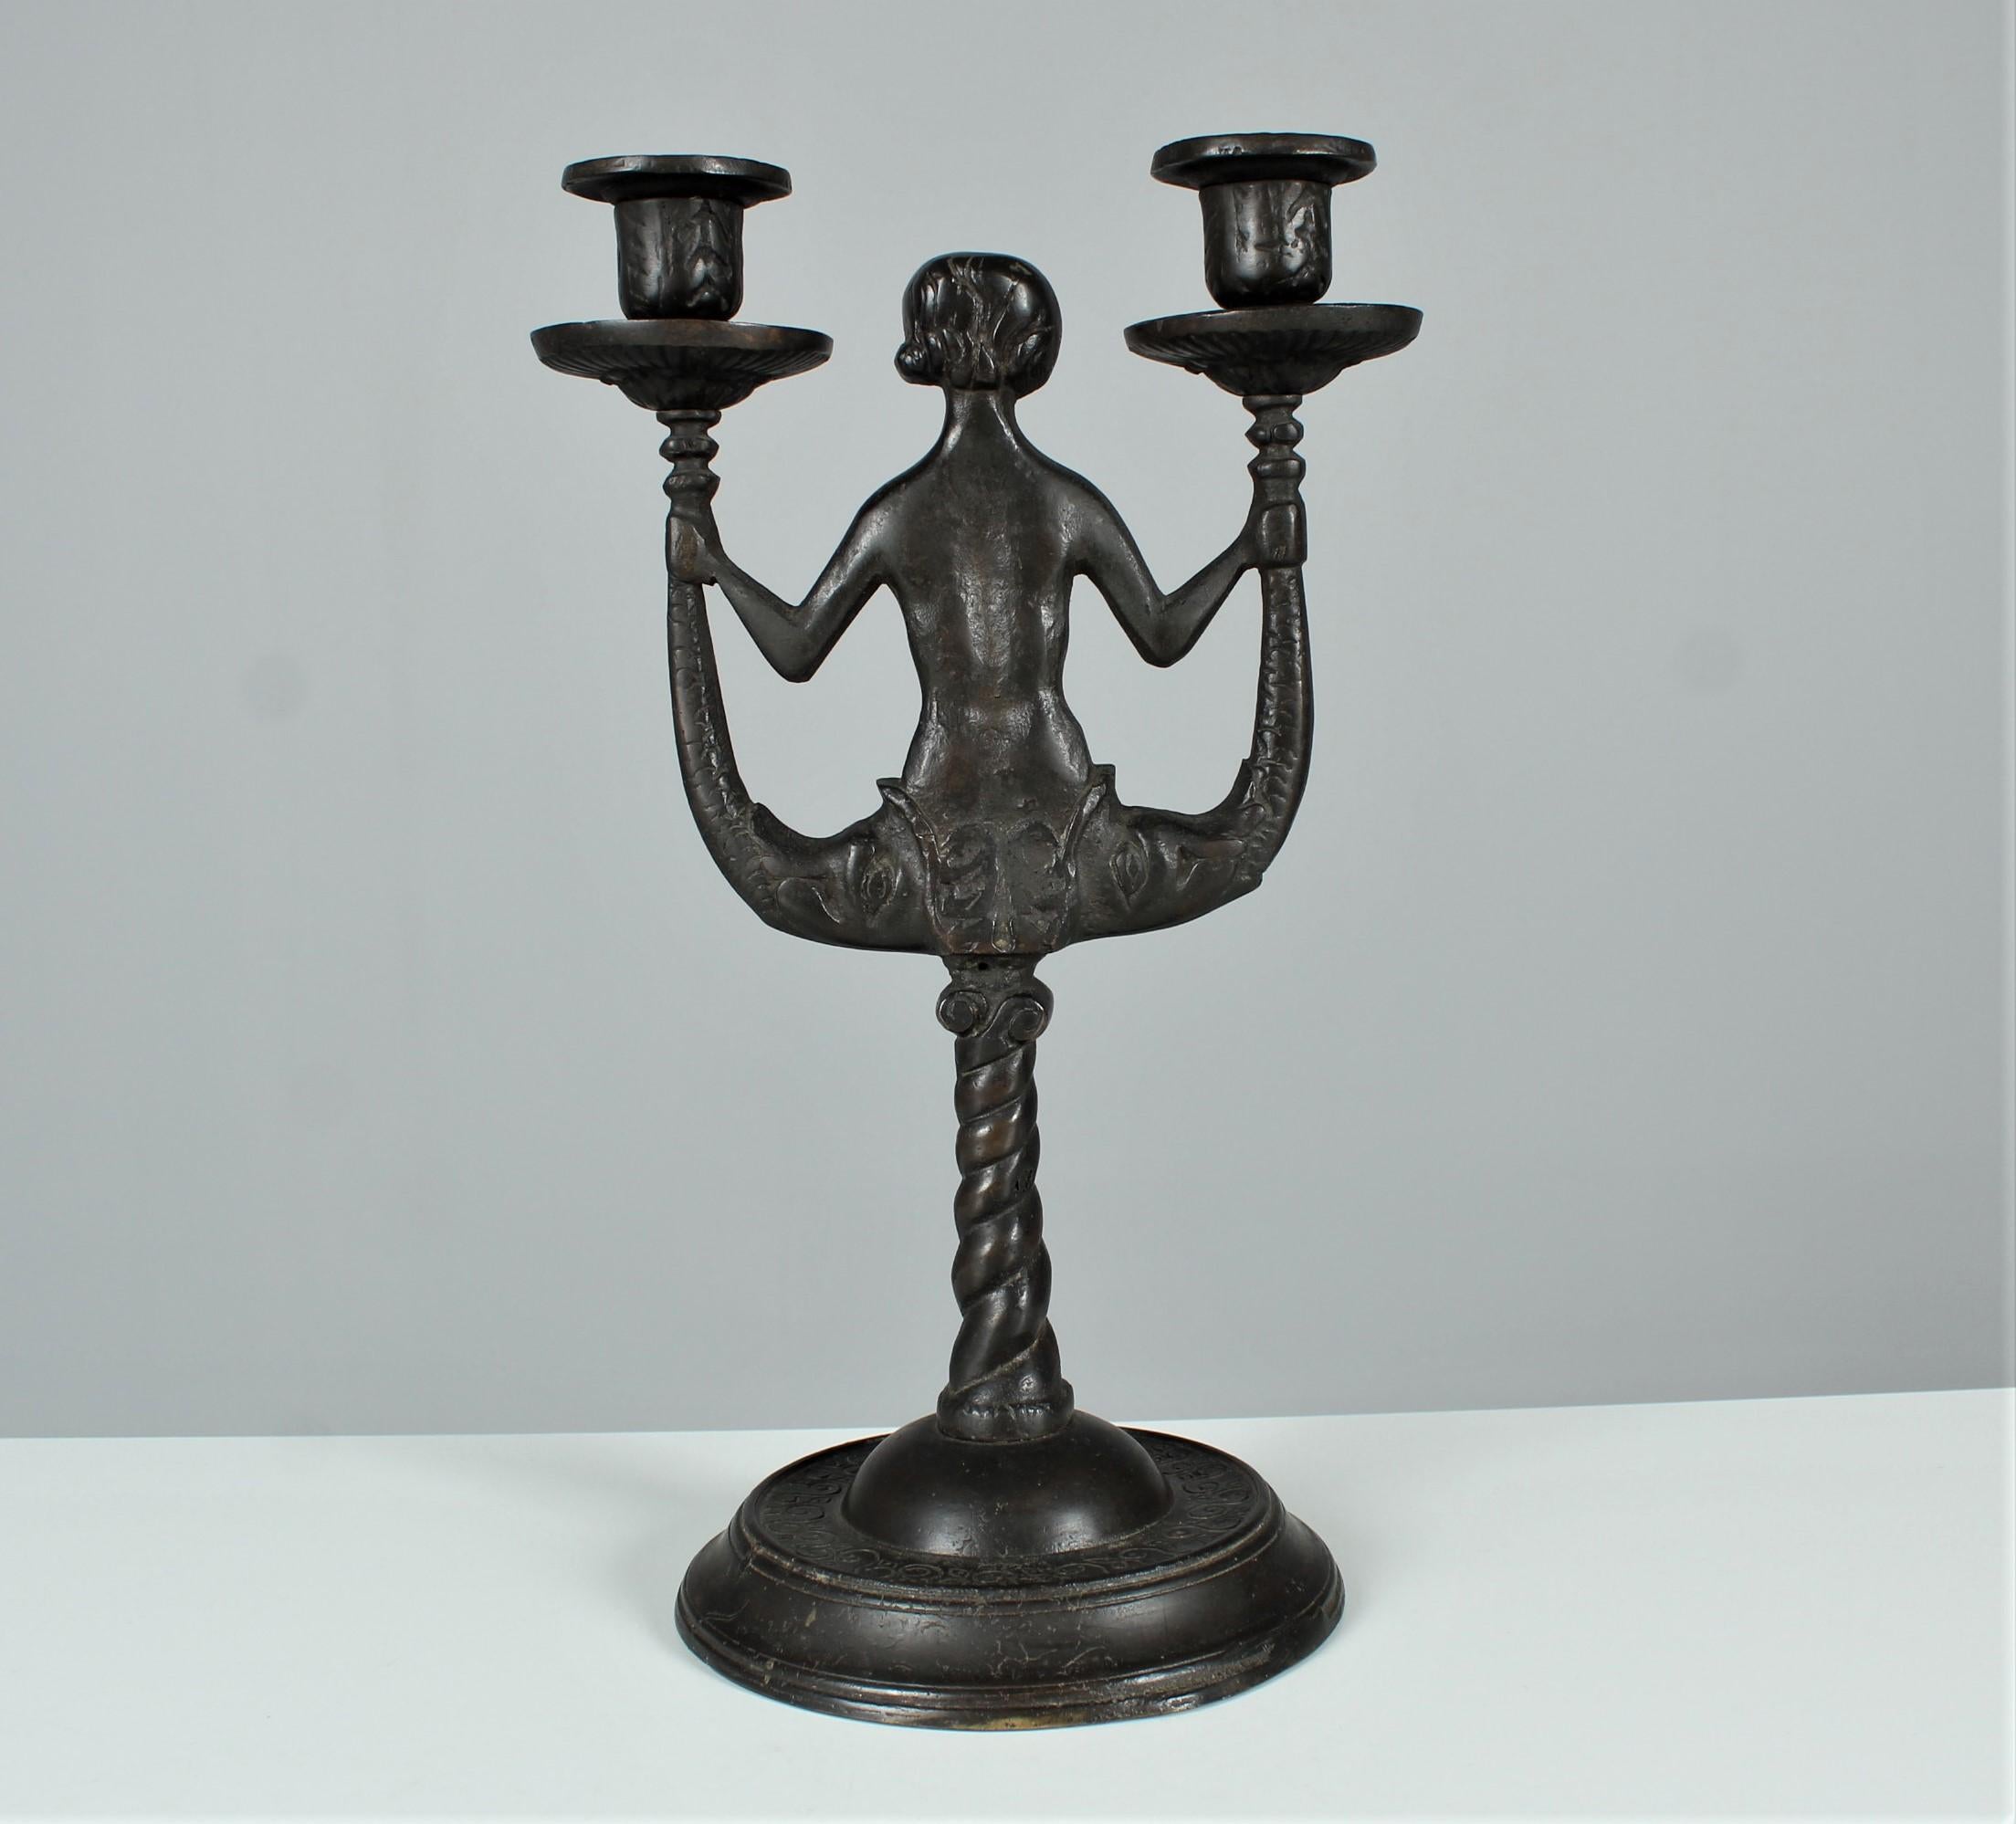 Antique Candlestick, Candle Holder, Bronze Patinated, Art Nouveau, Art Deco For Sale 1